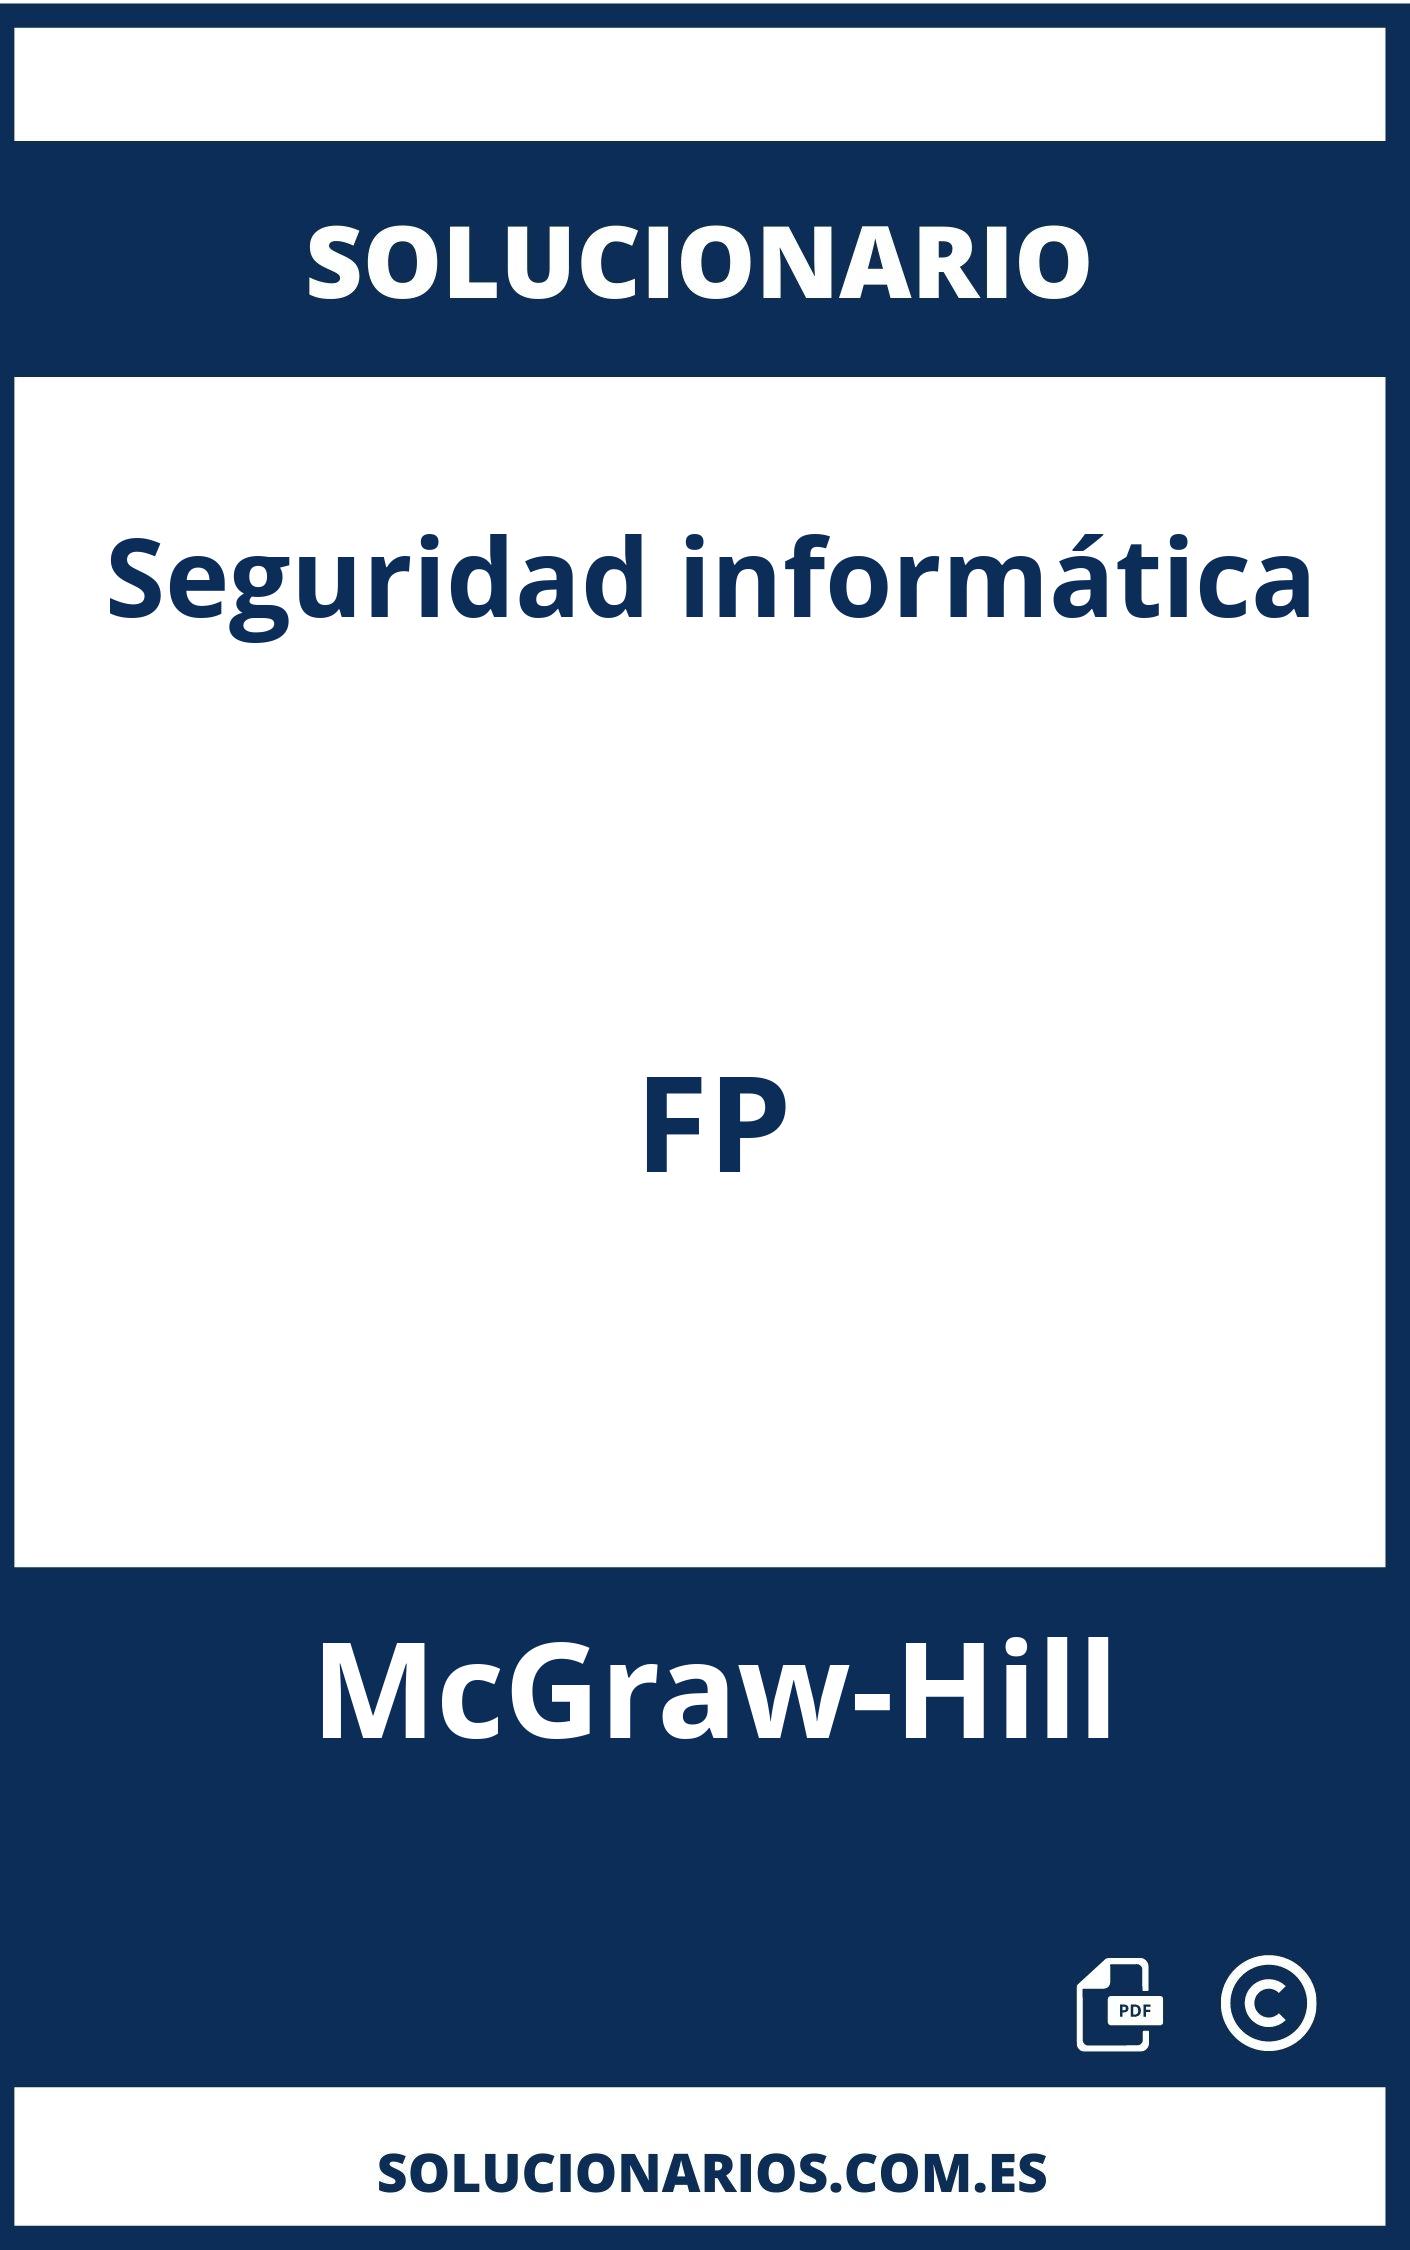 Solucionario Seguridad informática FP McGraw-Hill